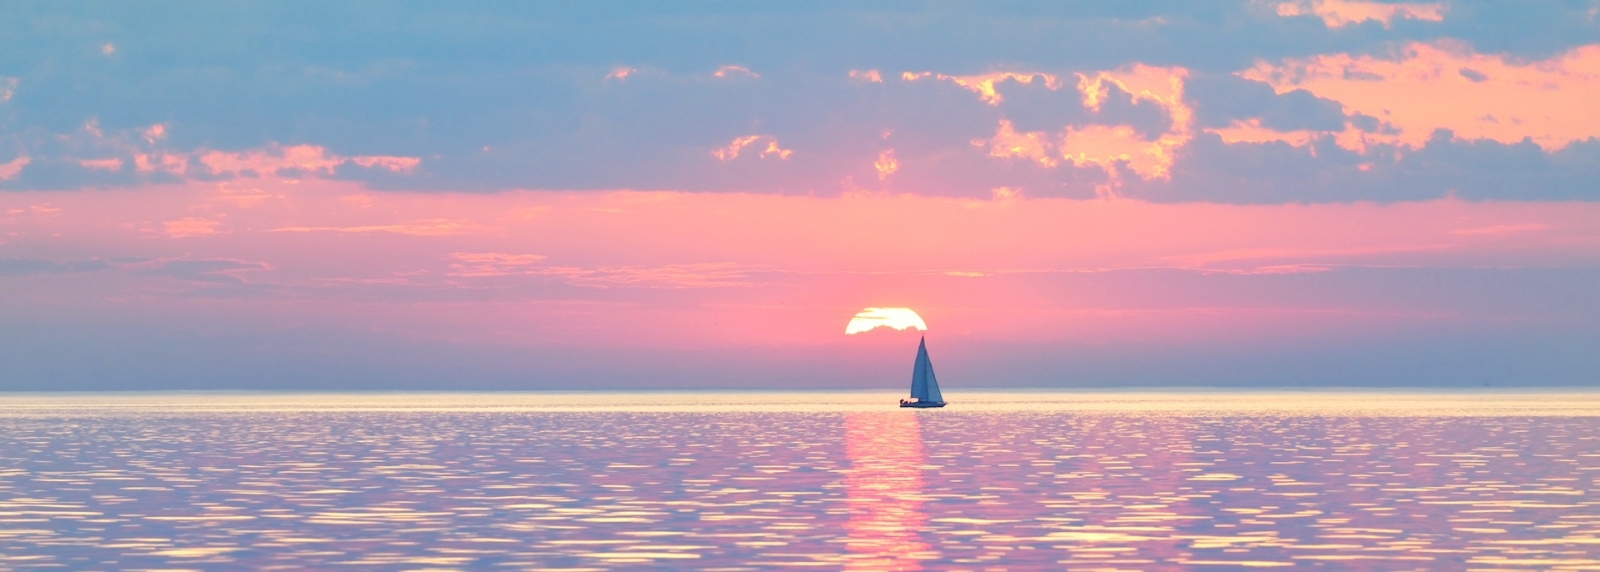 Mit einer Schaluppe ausgerüstete Yacht segelt bei Sonnenuntergang in der offenen Ostsee